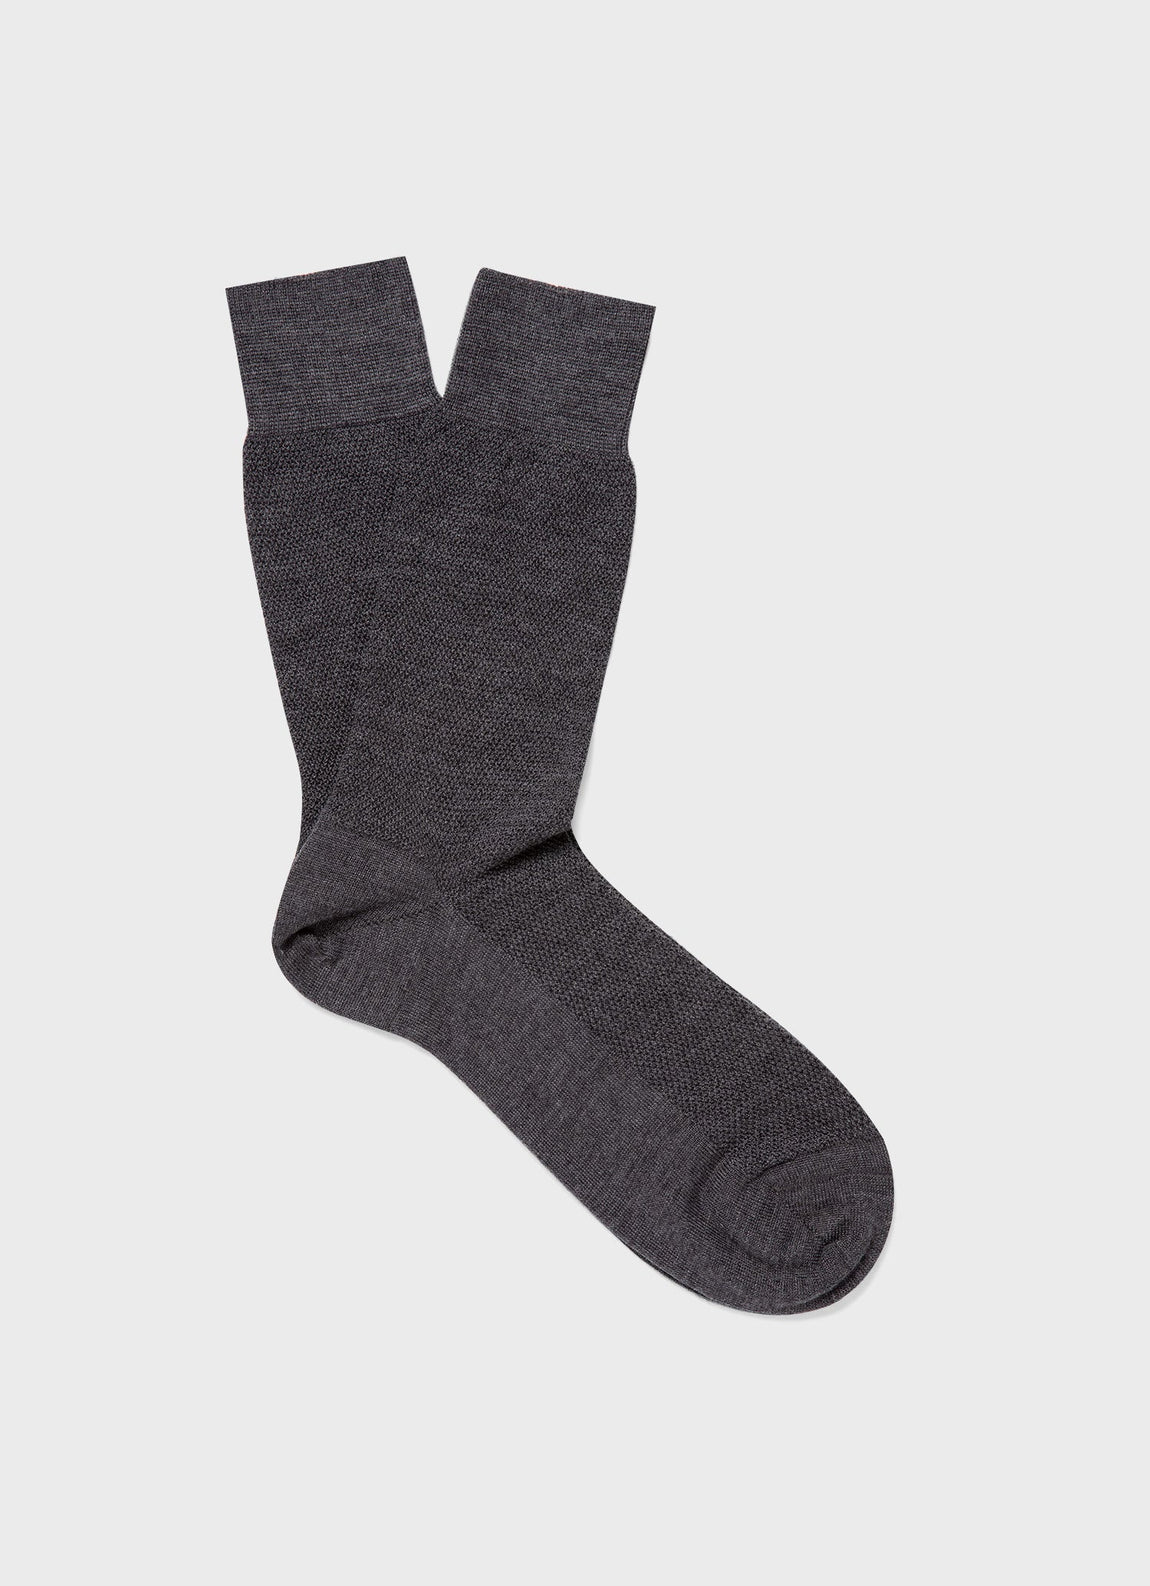 Men's Merino Wool Waffle Socks in Charcoal Melange